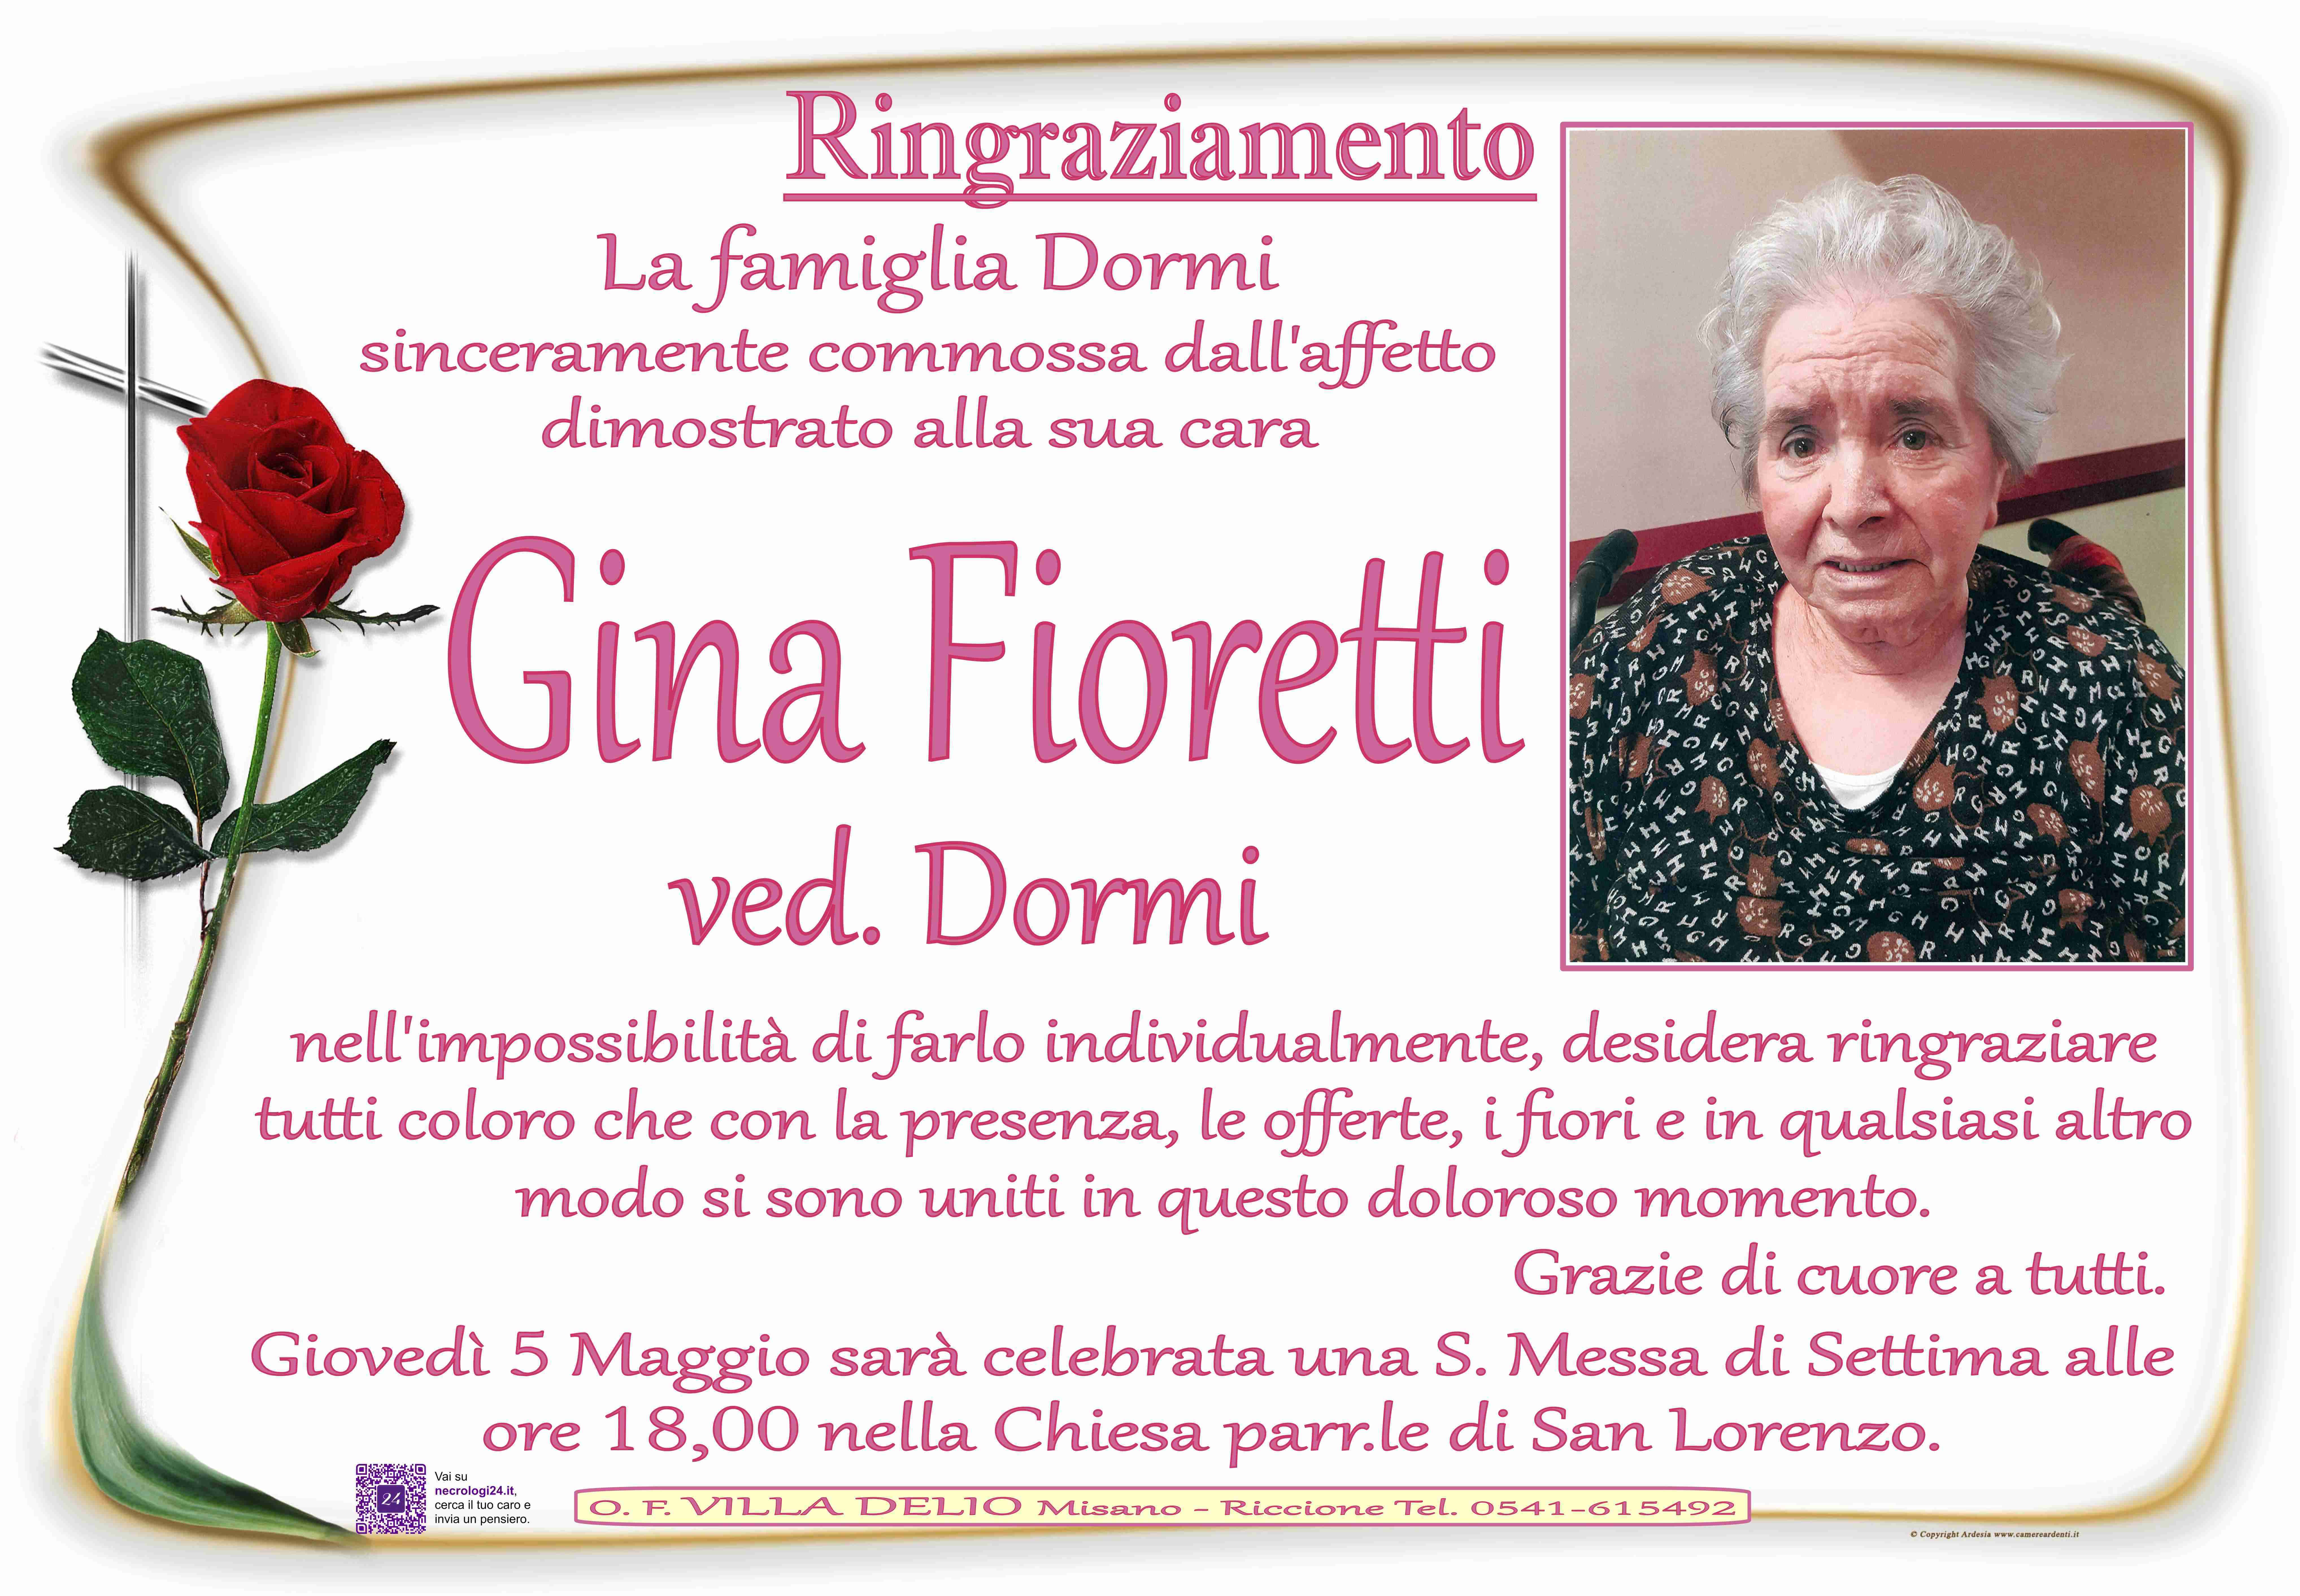 Gina Fioretti